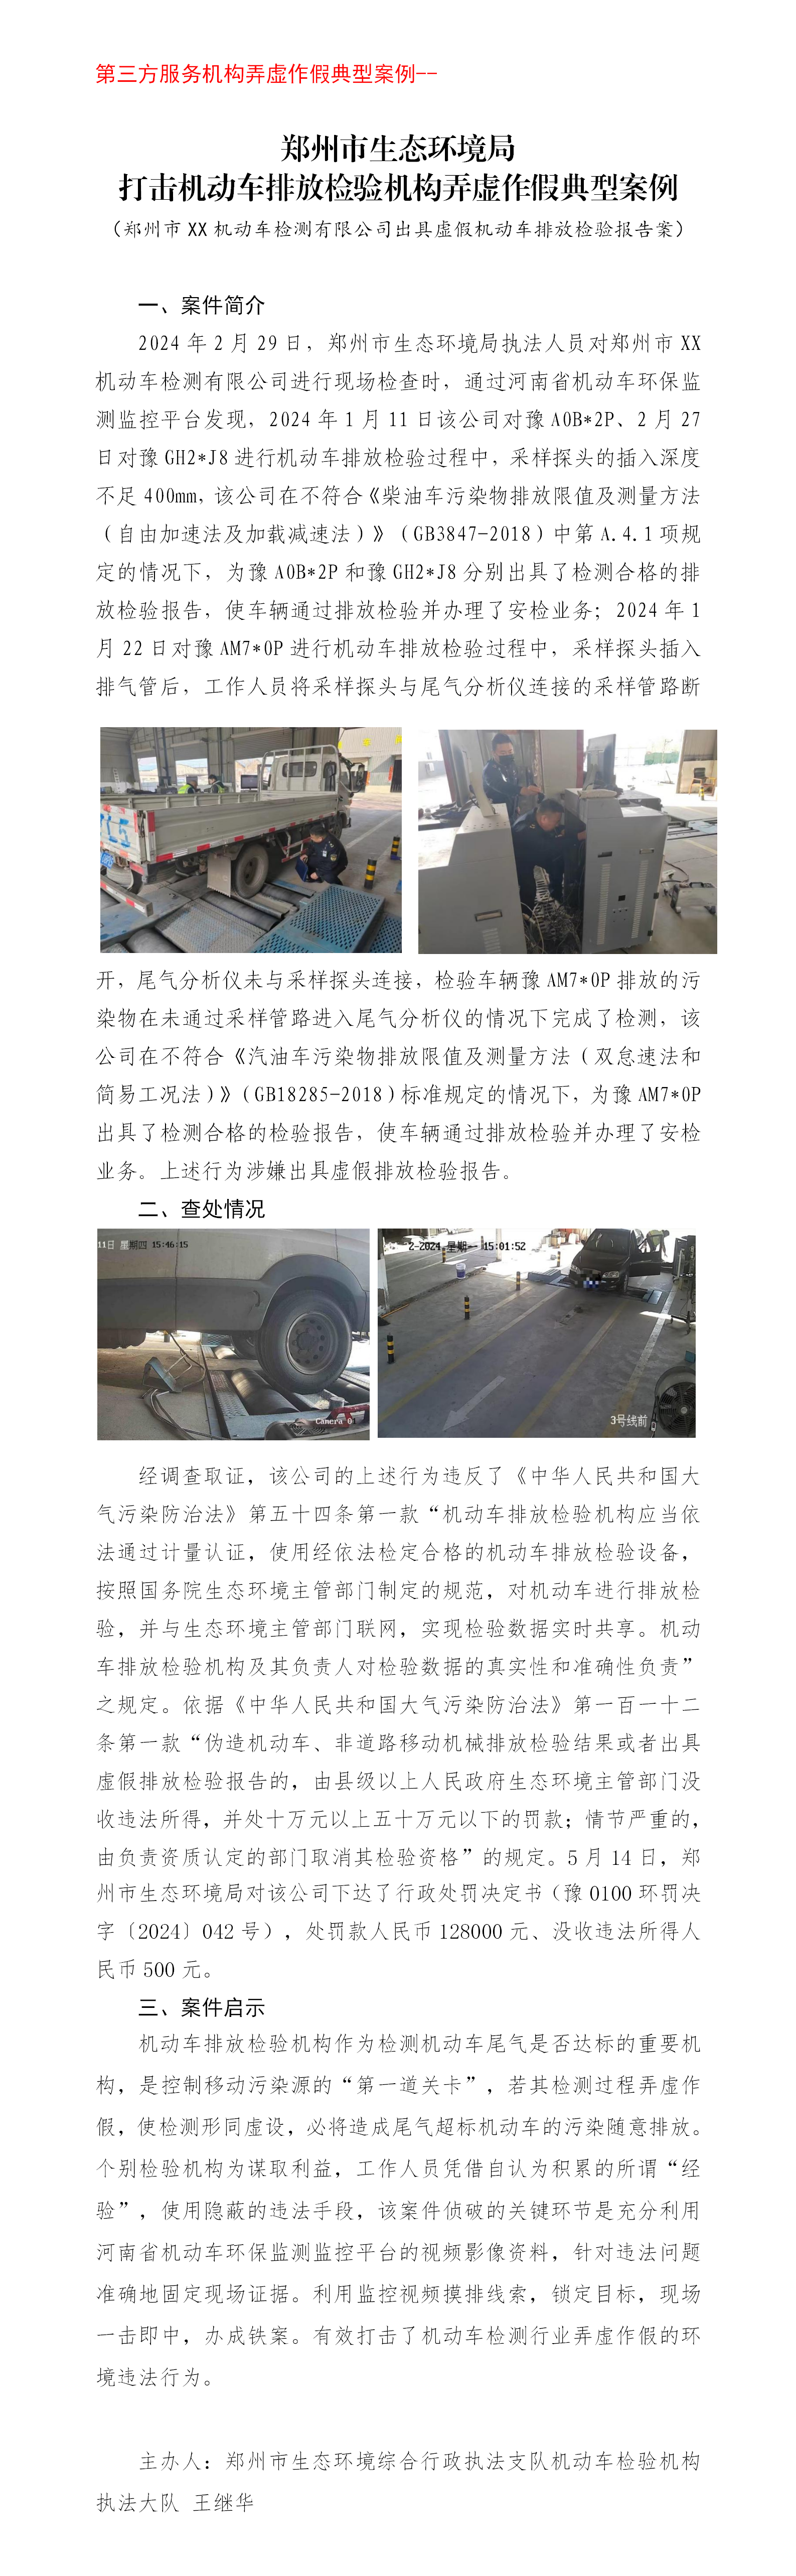 第三方 郑州市顺通机动车检测有限公司出具虚假机动车排放检验报告案_01.png